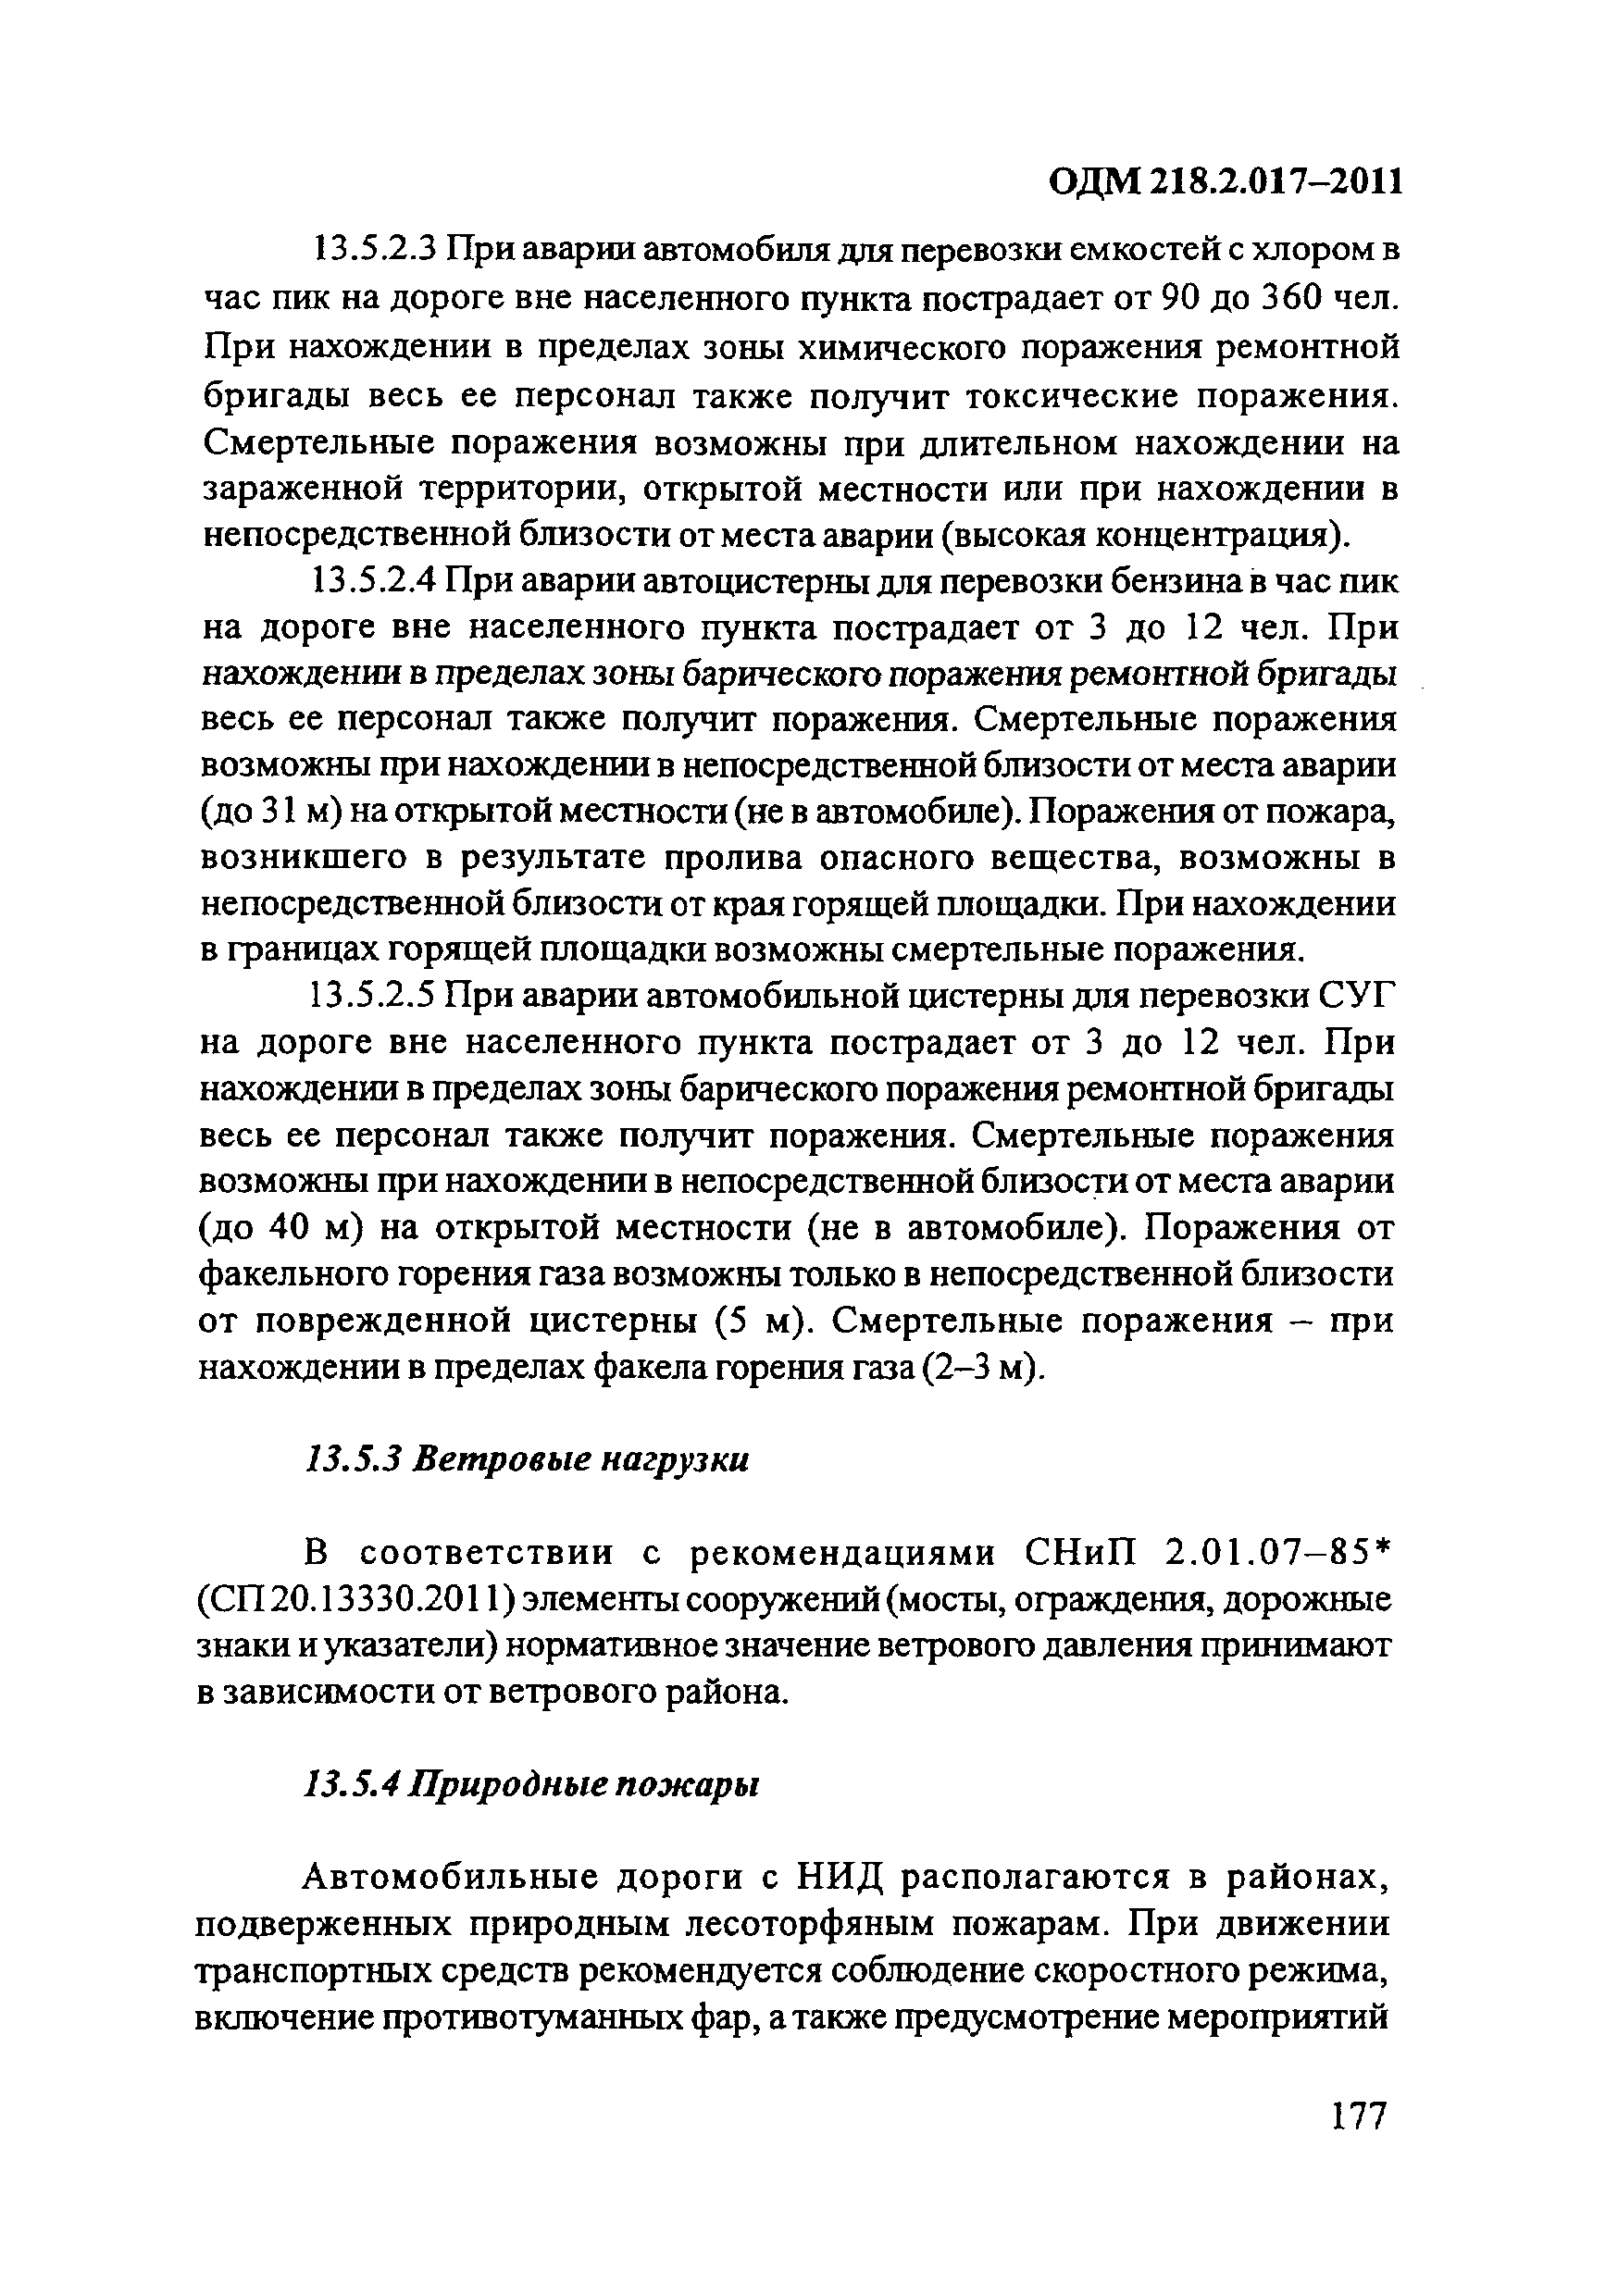 ОДМ 218.2.017-2011